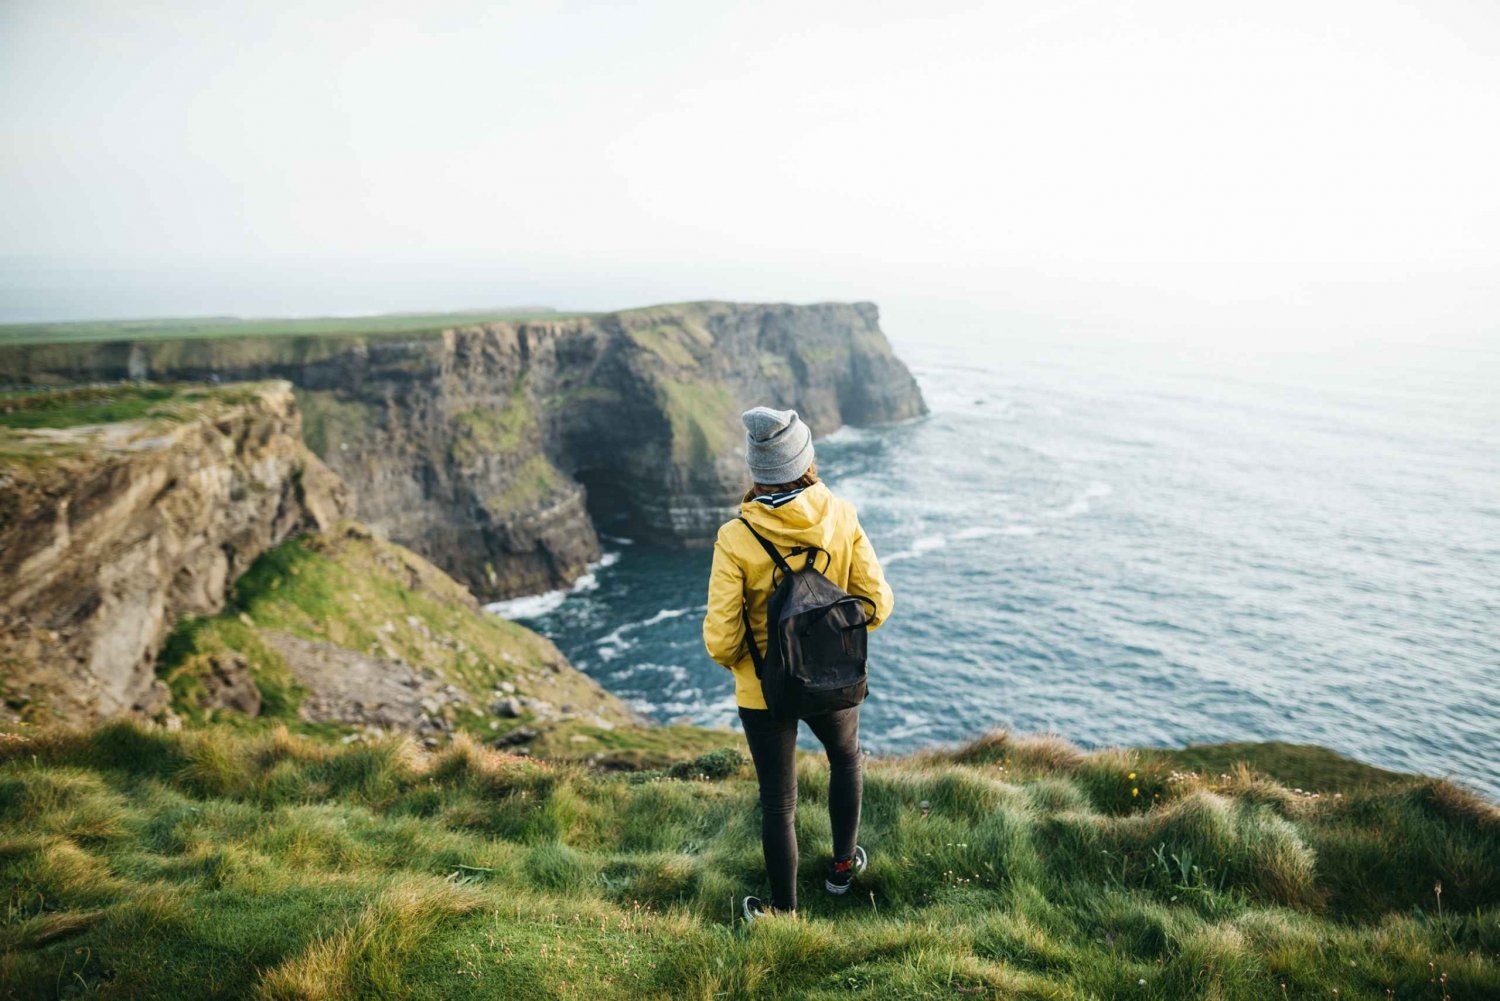 Dublin : Excursion d'une journée aux falaises de Moher, à Doolin, au Burren et à Galway